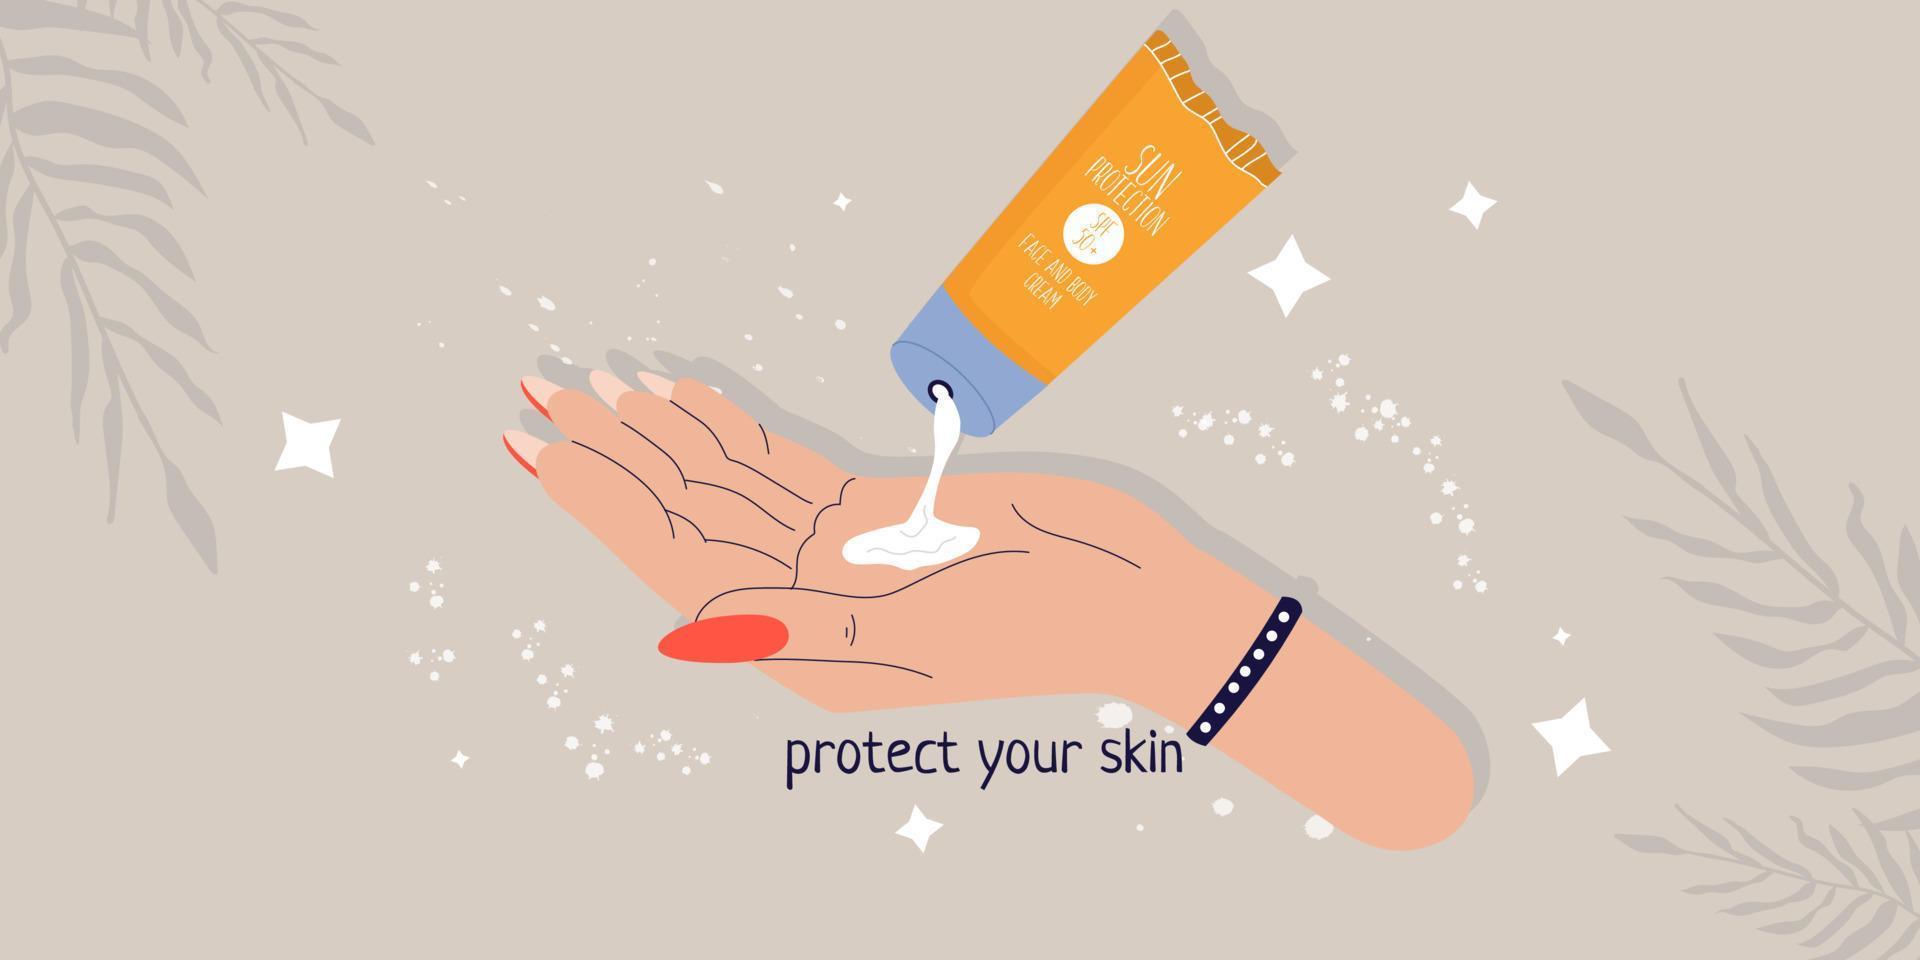 het concept van bescherming tegen de zon. een spandoek met zonnebrandcrème op de arm. bescherm je huid. moderne illustratie voor print en web. vector